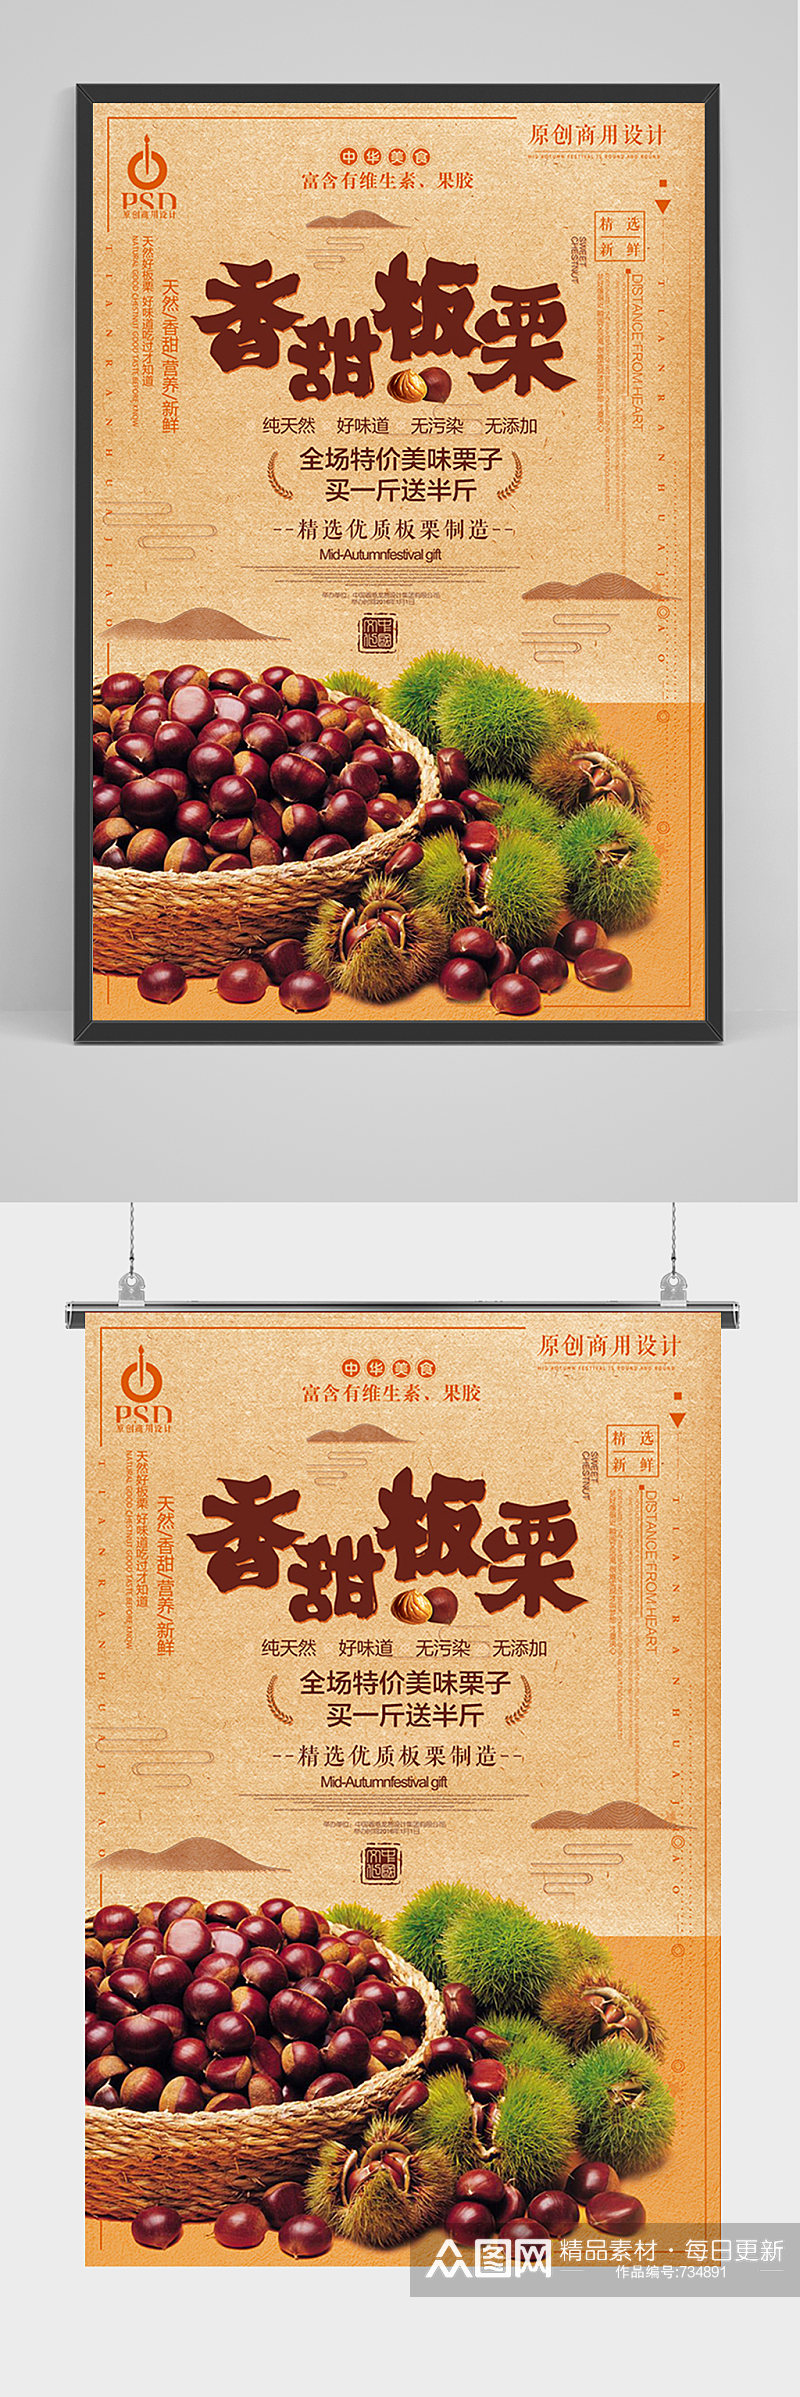 中国风香甜板栗海报素材